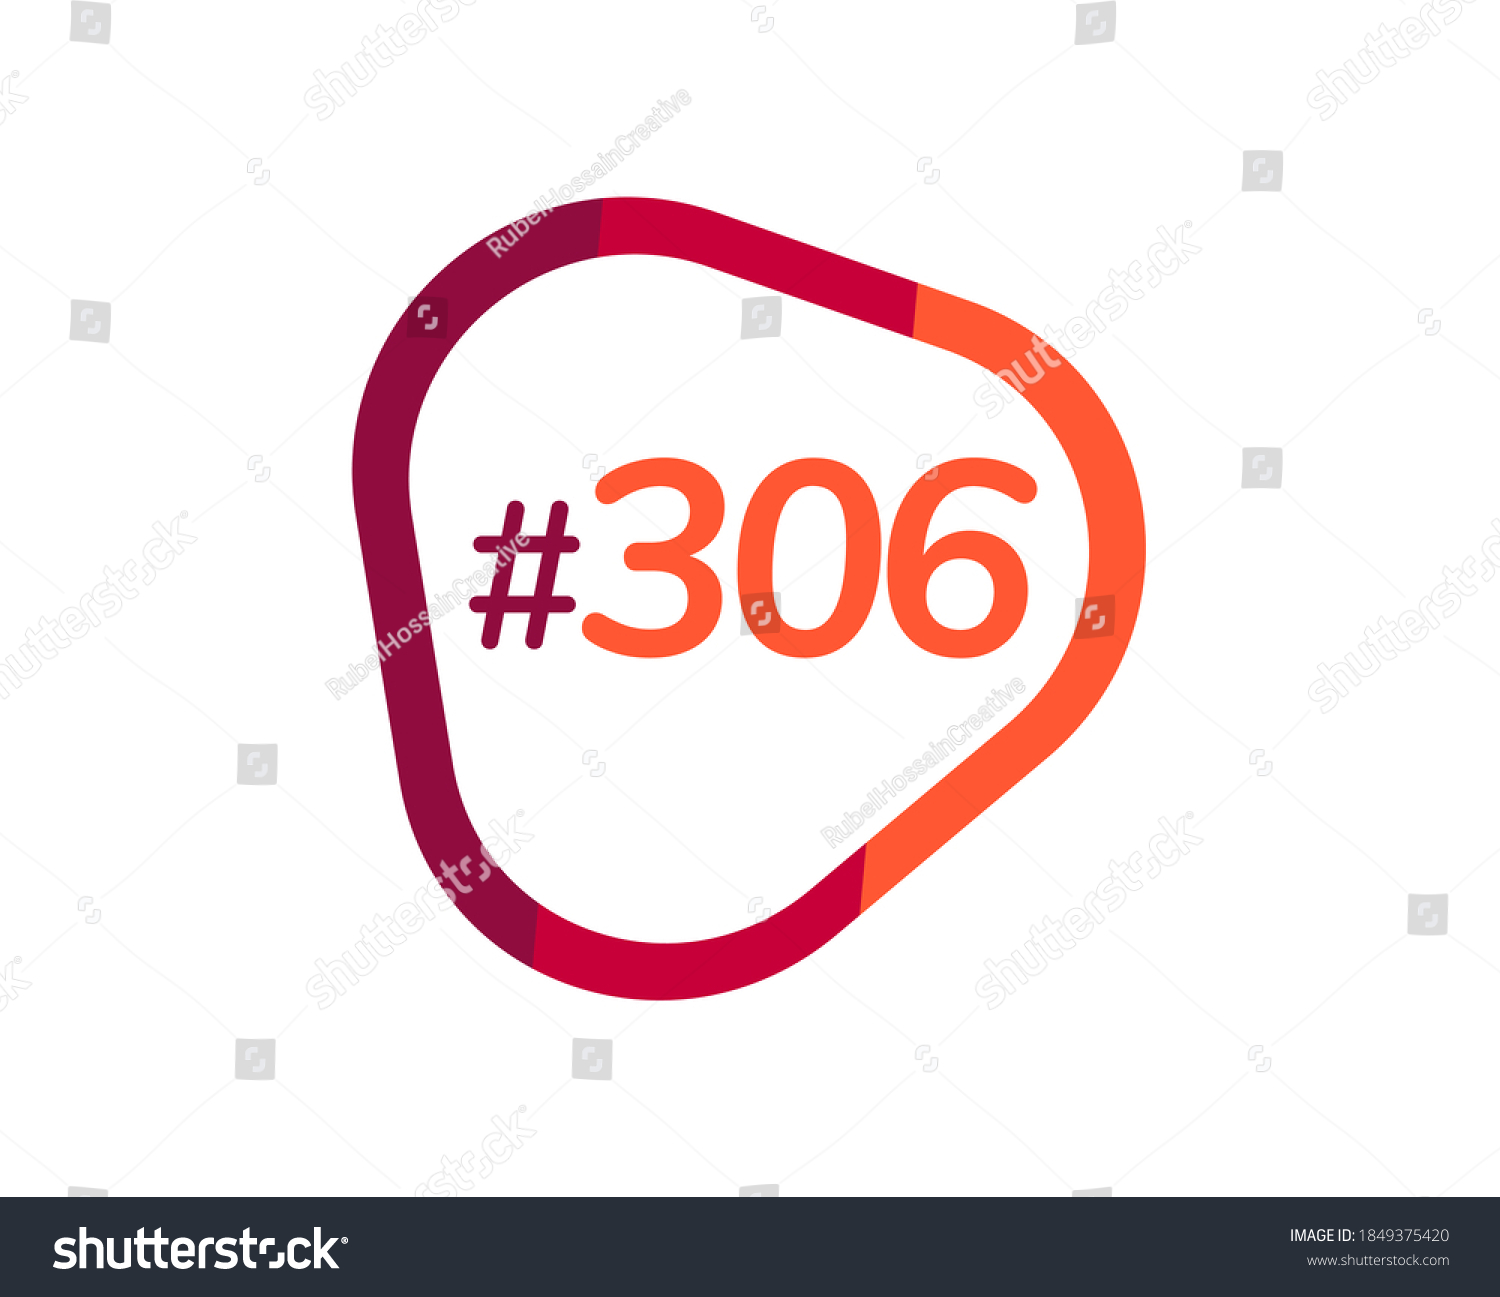 SVG of Number 306 image design, 306 logos svg